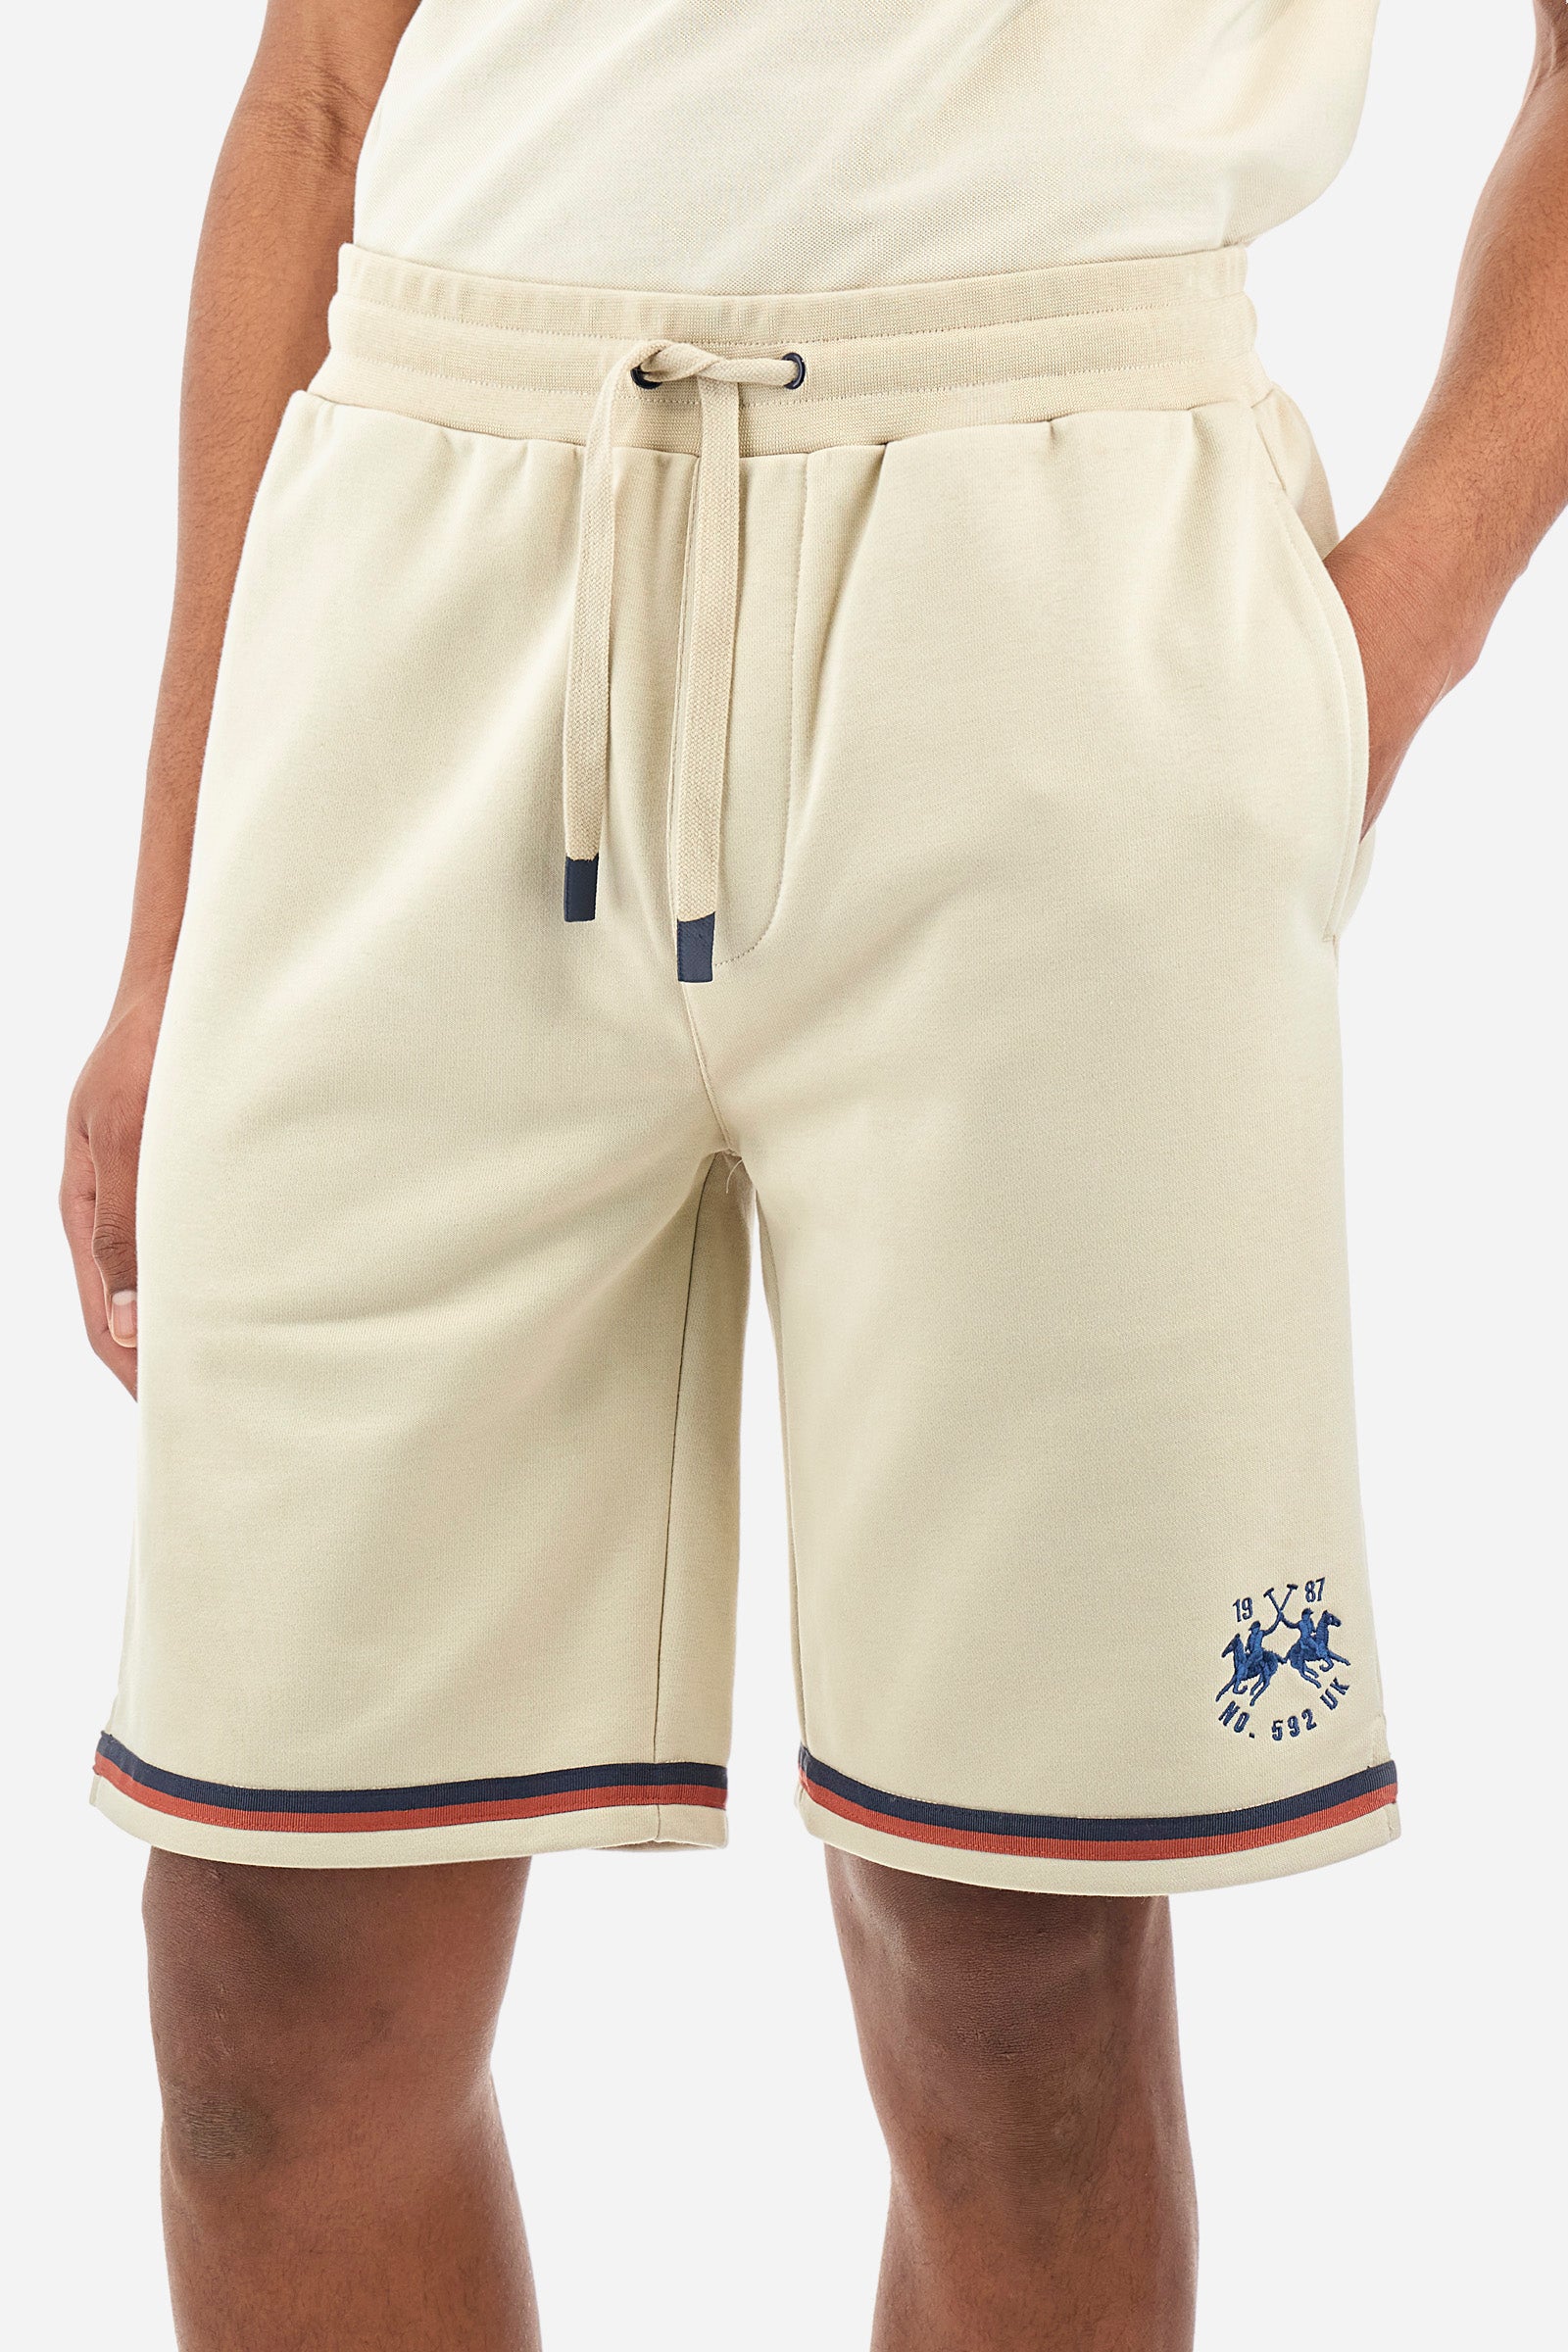 Men's Bermuda shorts in a regular fit - Yahir